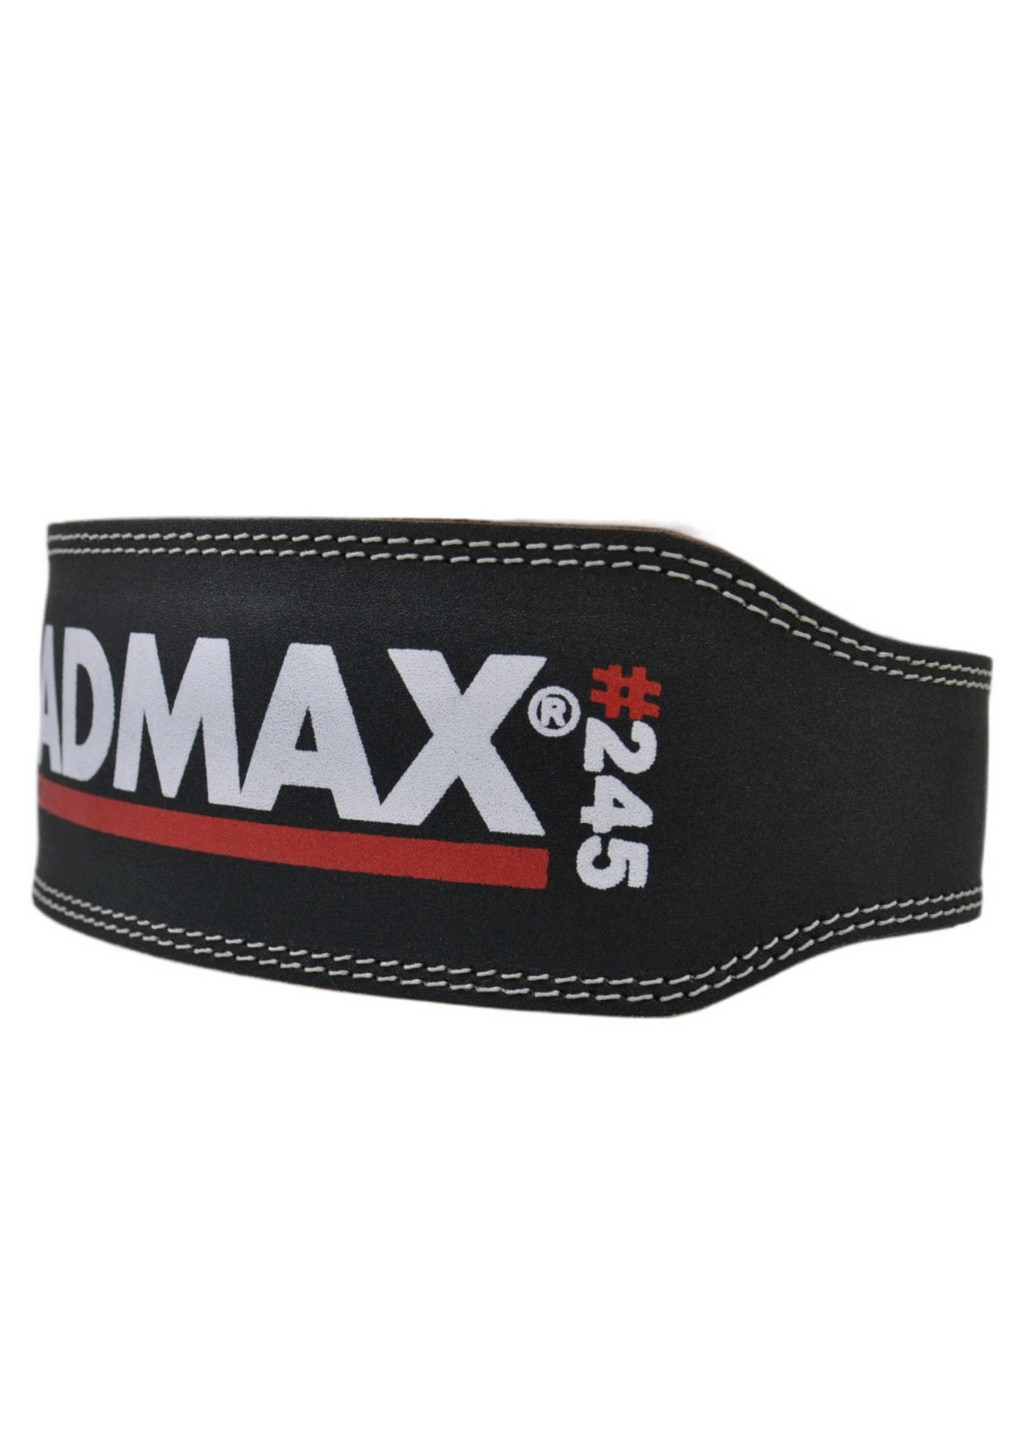 Пояс для тяжелой атлетики Full leather M Mad Max (263427065)